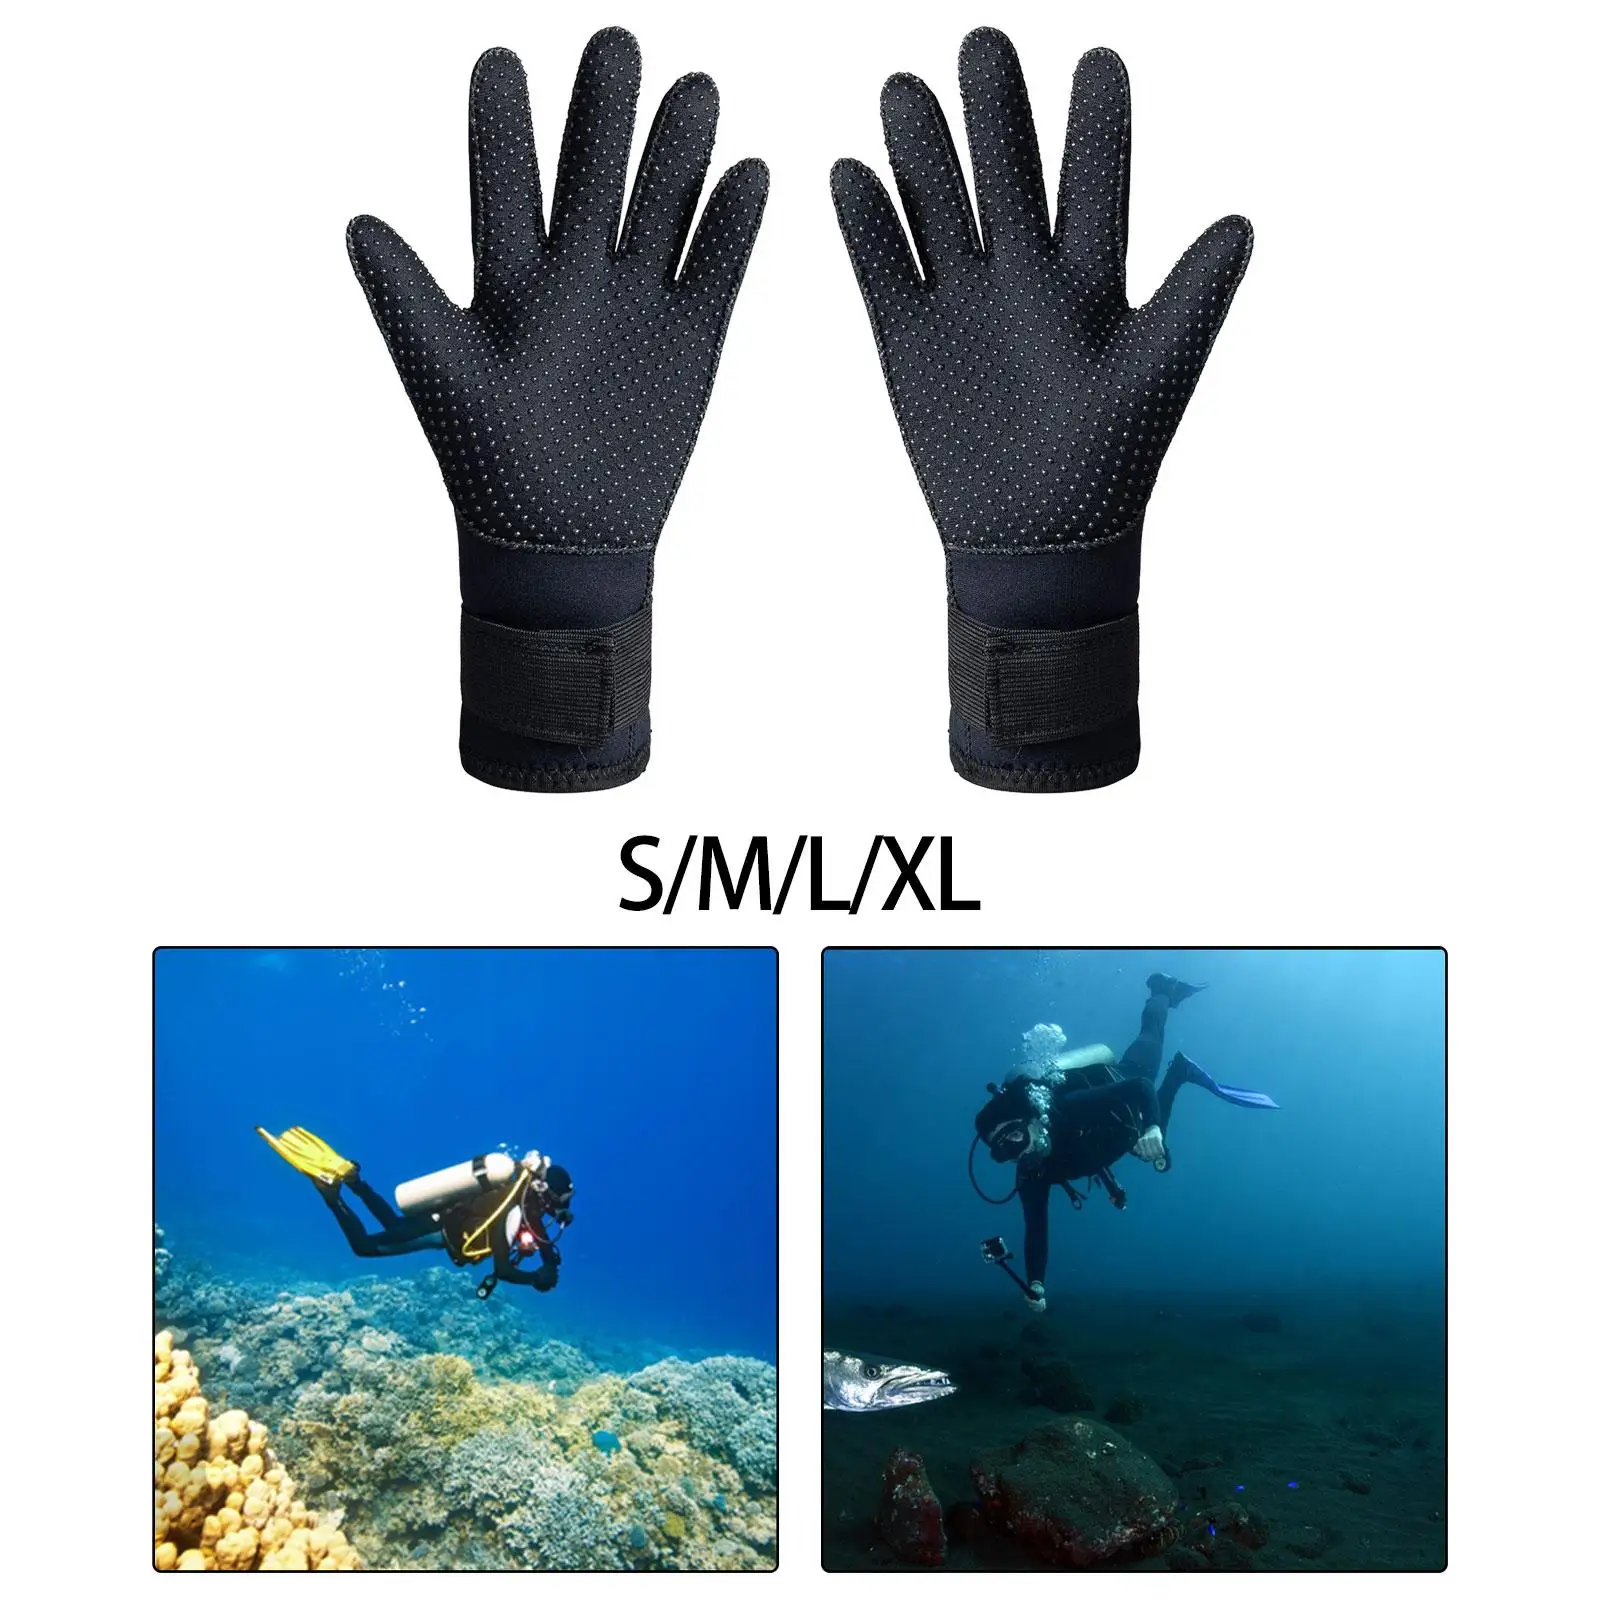 3mm Neoprene Gloves Wetsuit Gloves Hand Protection Scuba Diving Gloves for Women Men Spearfishing Lap Swimming Paddling Surfing